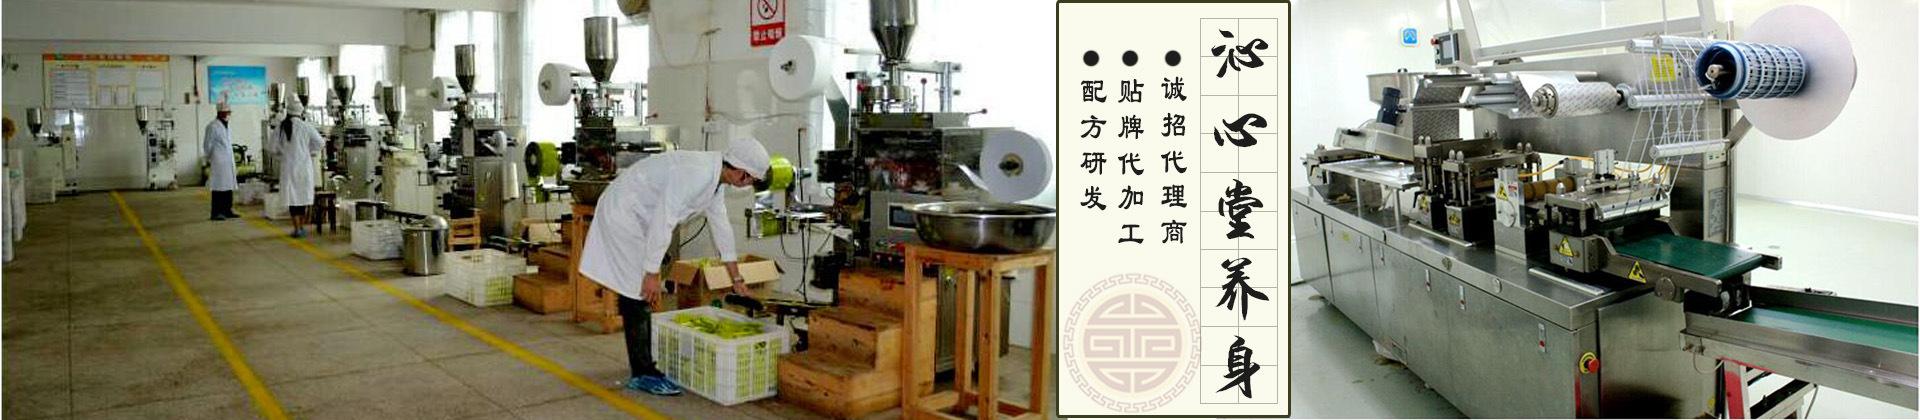 枣阳市沁心堂养生茶拥有含茶制品及代用茶(袋泡茶)生产线两条